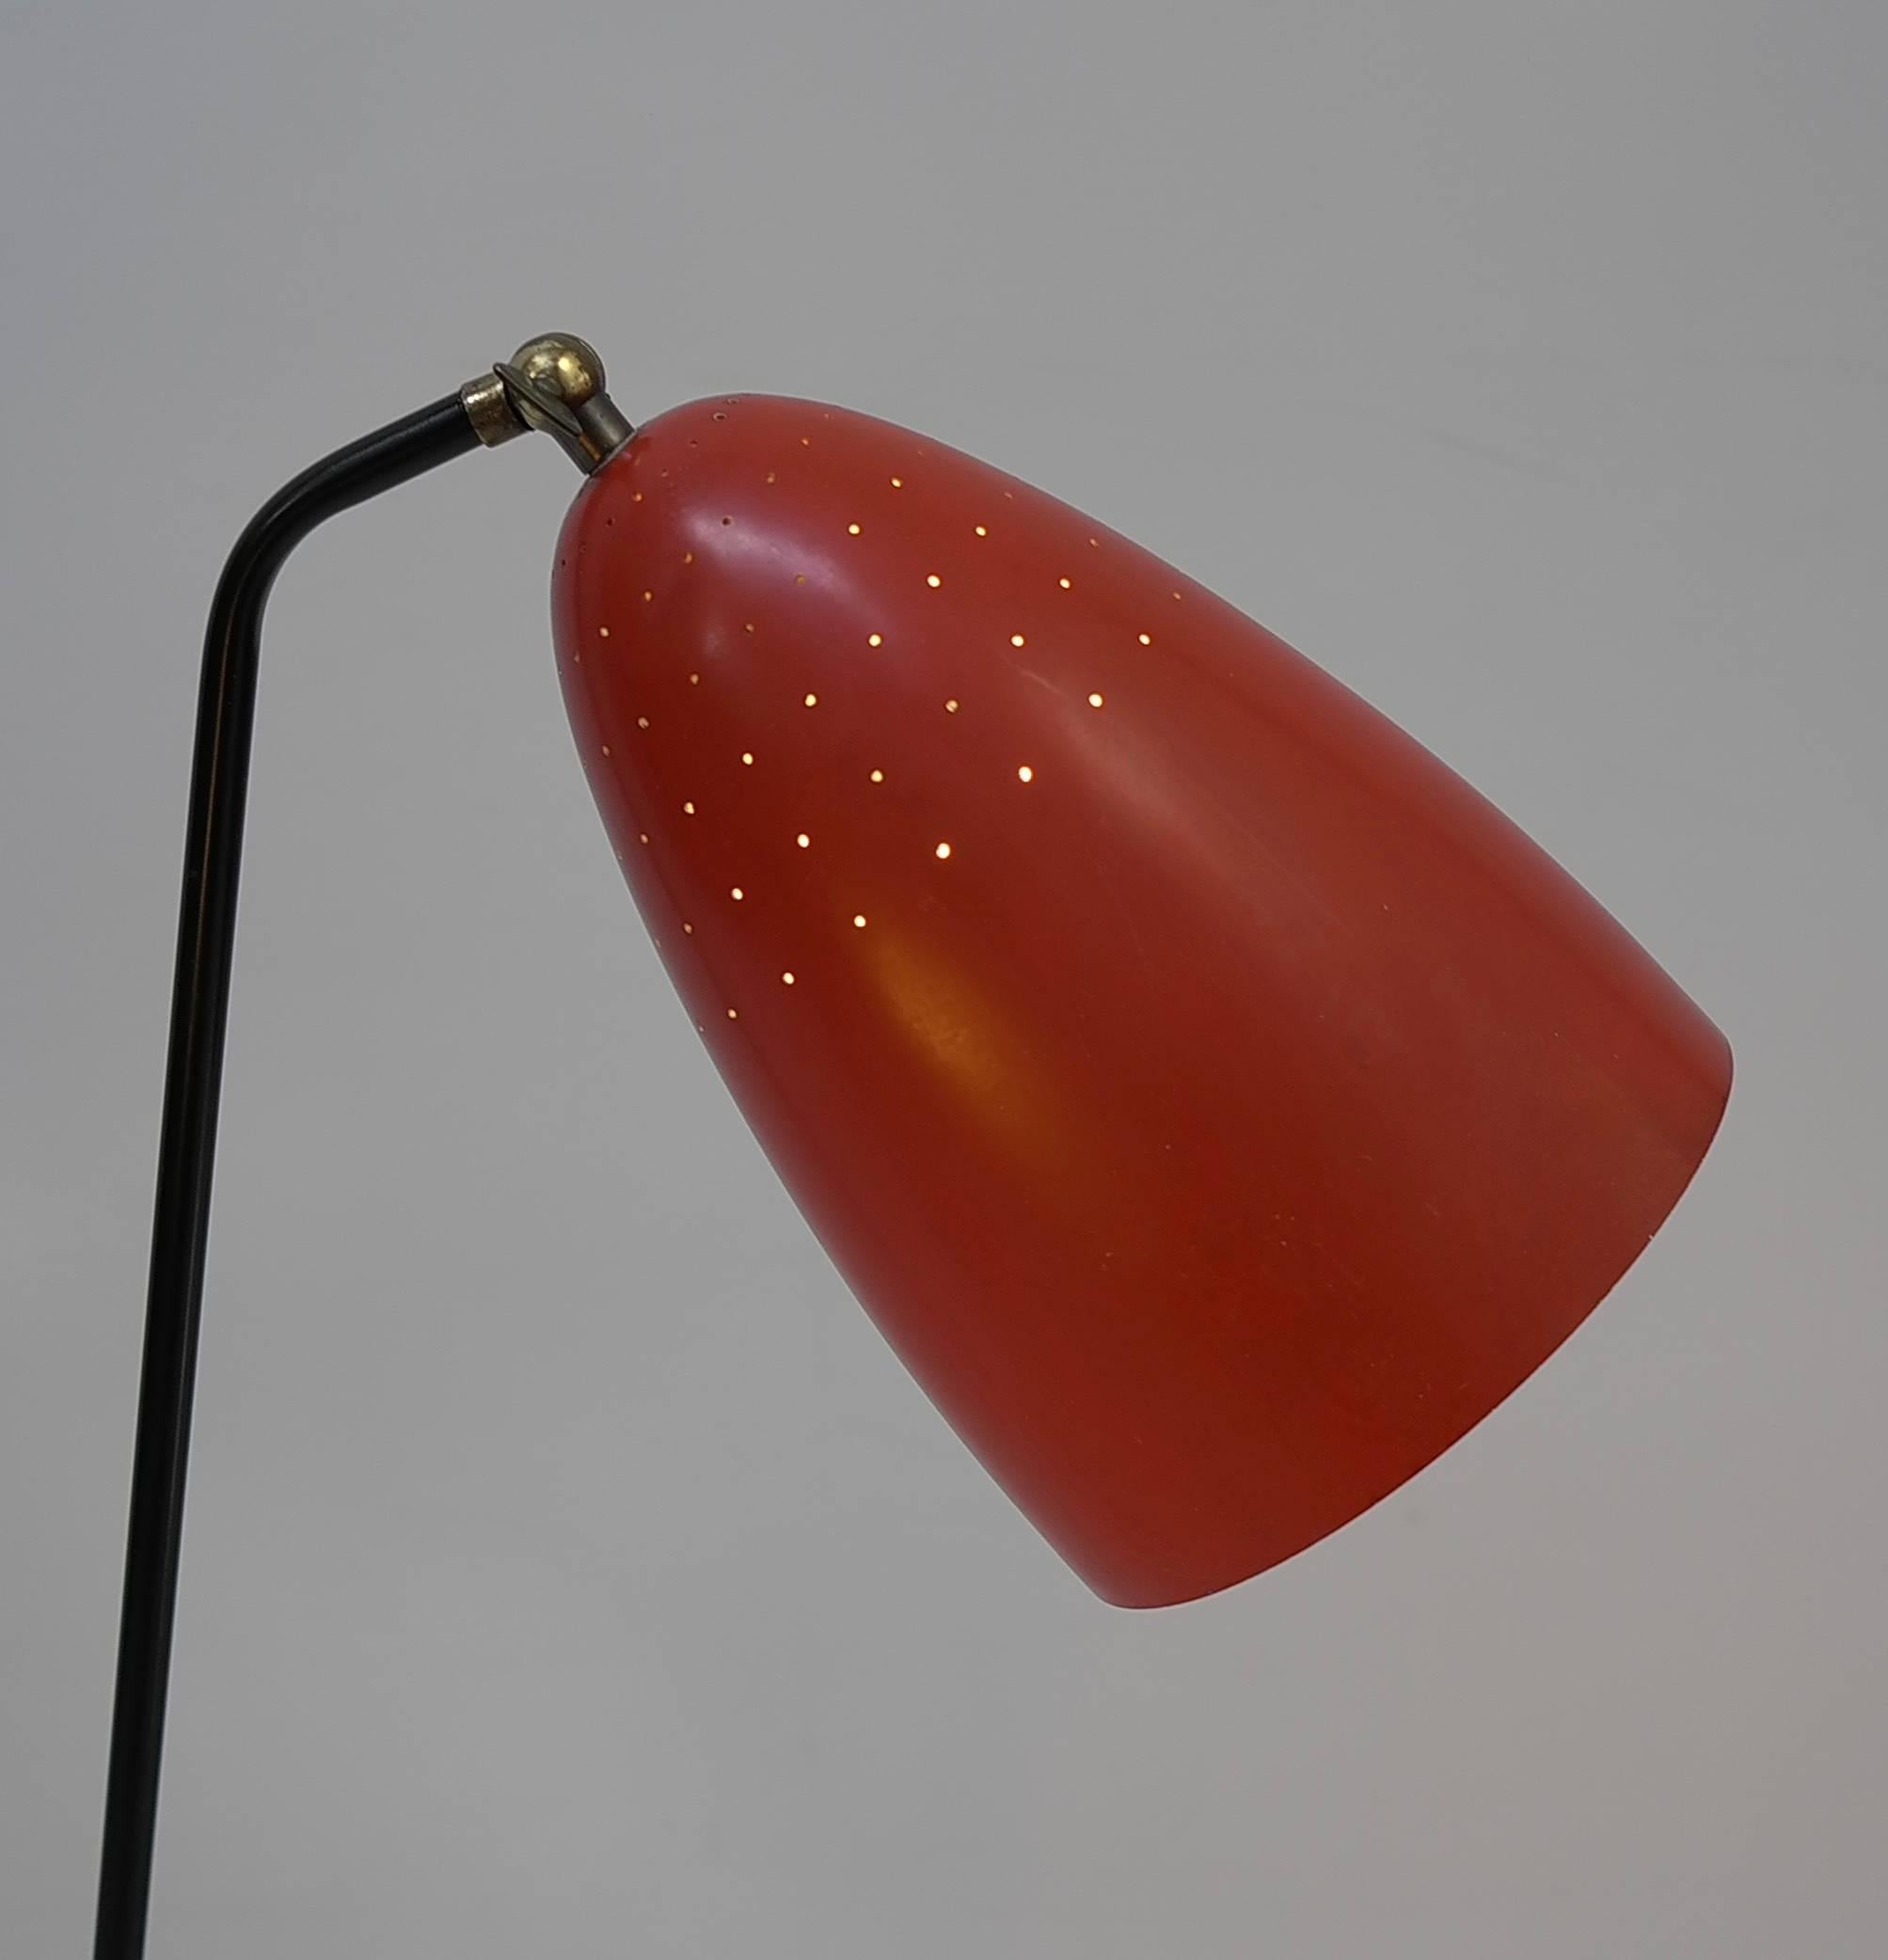 Rote Grashüpfer-Stehleuchte von Svend Aage Holm Sorensen, Dänemark, 1950er Jahre. Durch die vielen winzigen Löcher in den roten Kapuzen fällt schönes Licht. Die Enden der Metallfüße sind aus Messing gefertigt.